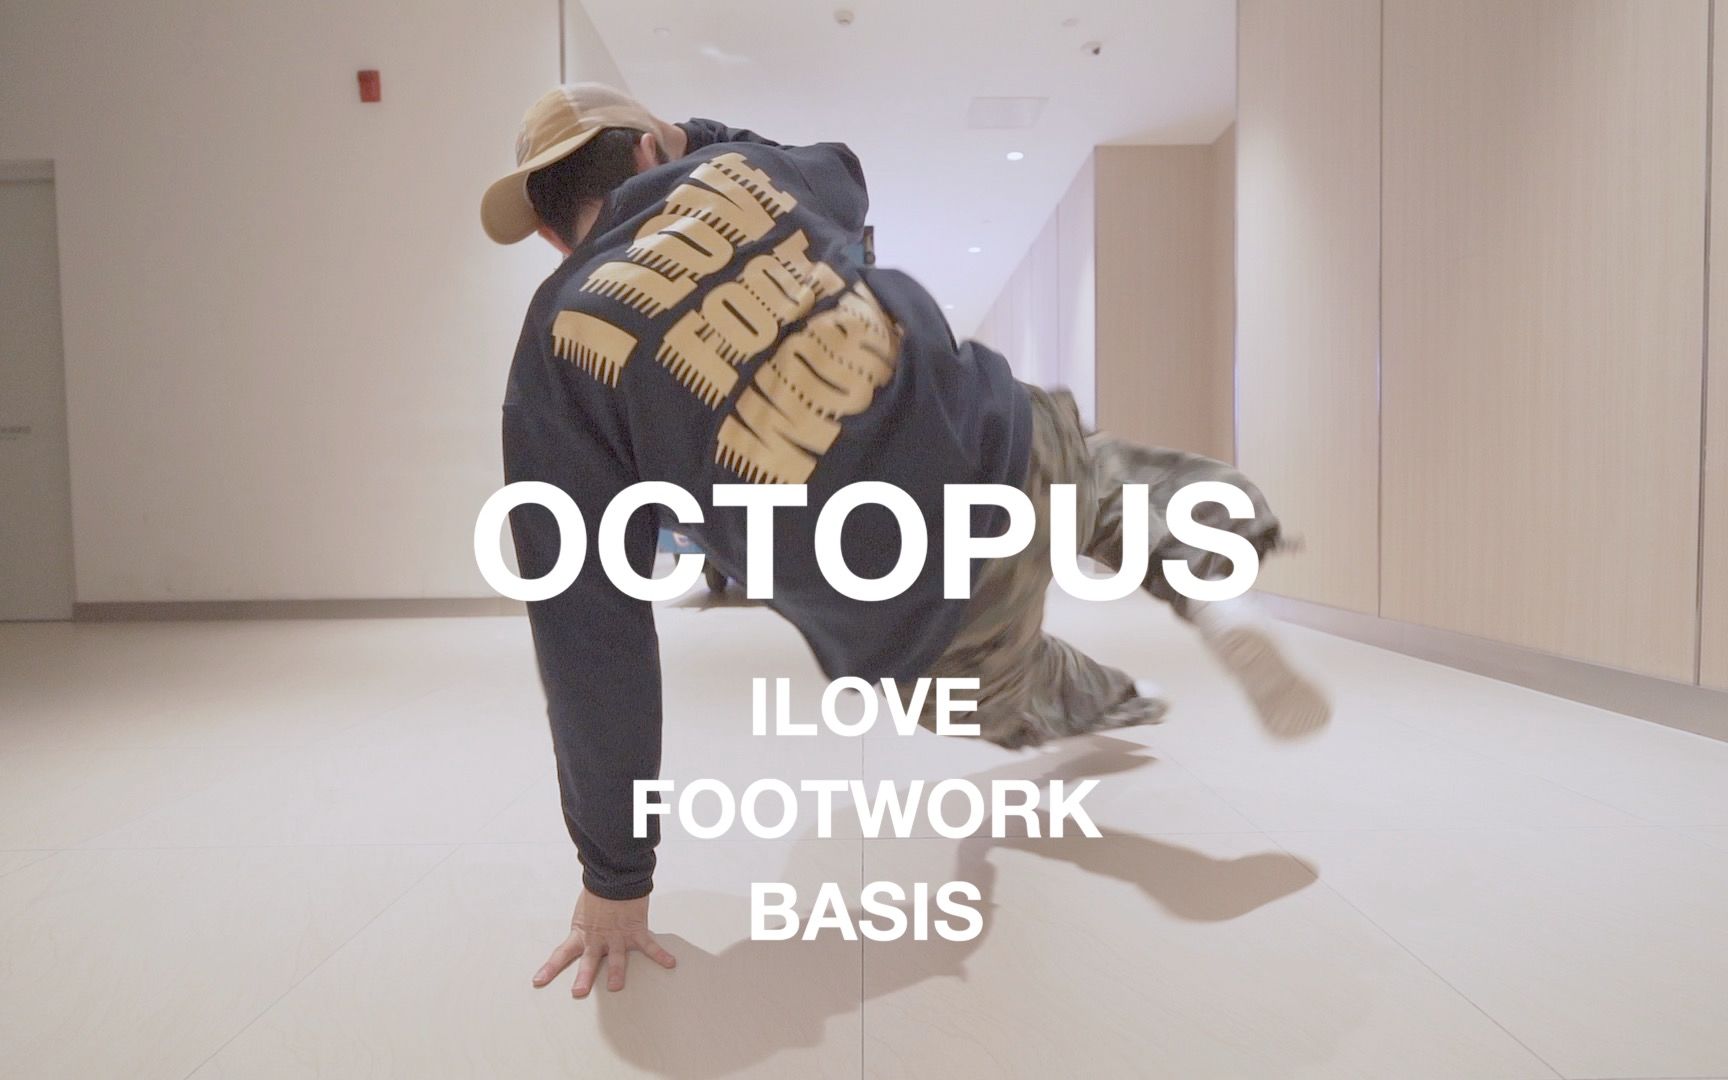 OCTOPUS ilovefootwork basis (footwork教学演示) #bboy #footwork #北腿